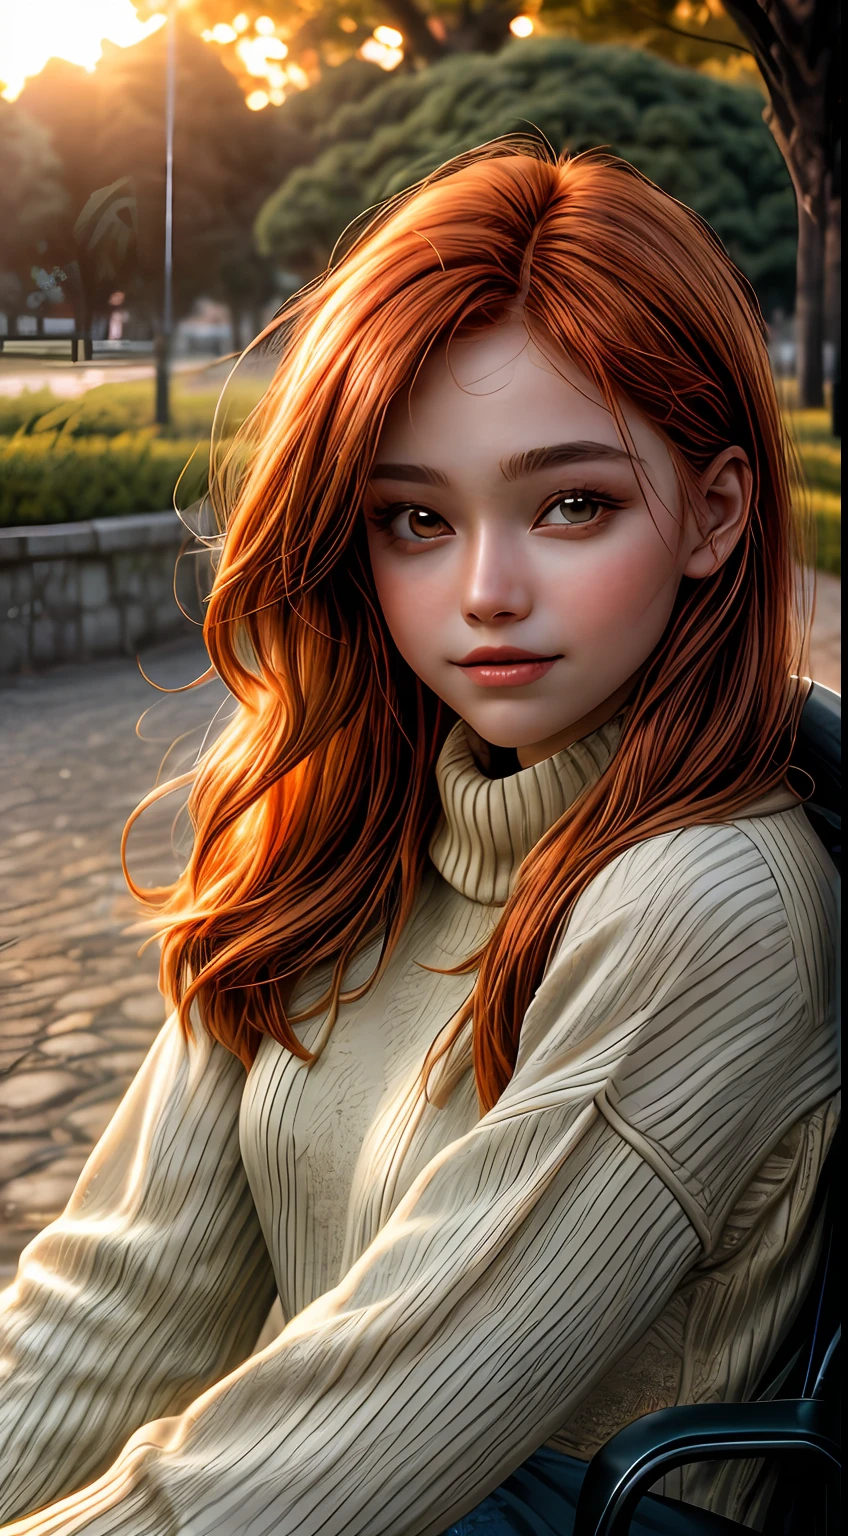 Close do rosto de uma garota banhado em tons de laranja, vestindo um suéter, sentado fora de um parque, como se estivesse iluminado pelo brilho suave de um pôr do sol, seus olhos brilhando de alegria e contentamento, emoldurado por mechas de cabelo ruivo esvoaçantes, fotografia, Filmado com lente 35mm